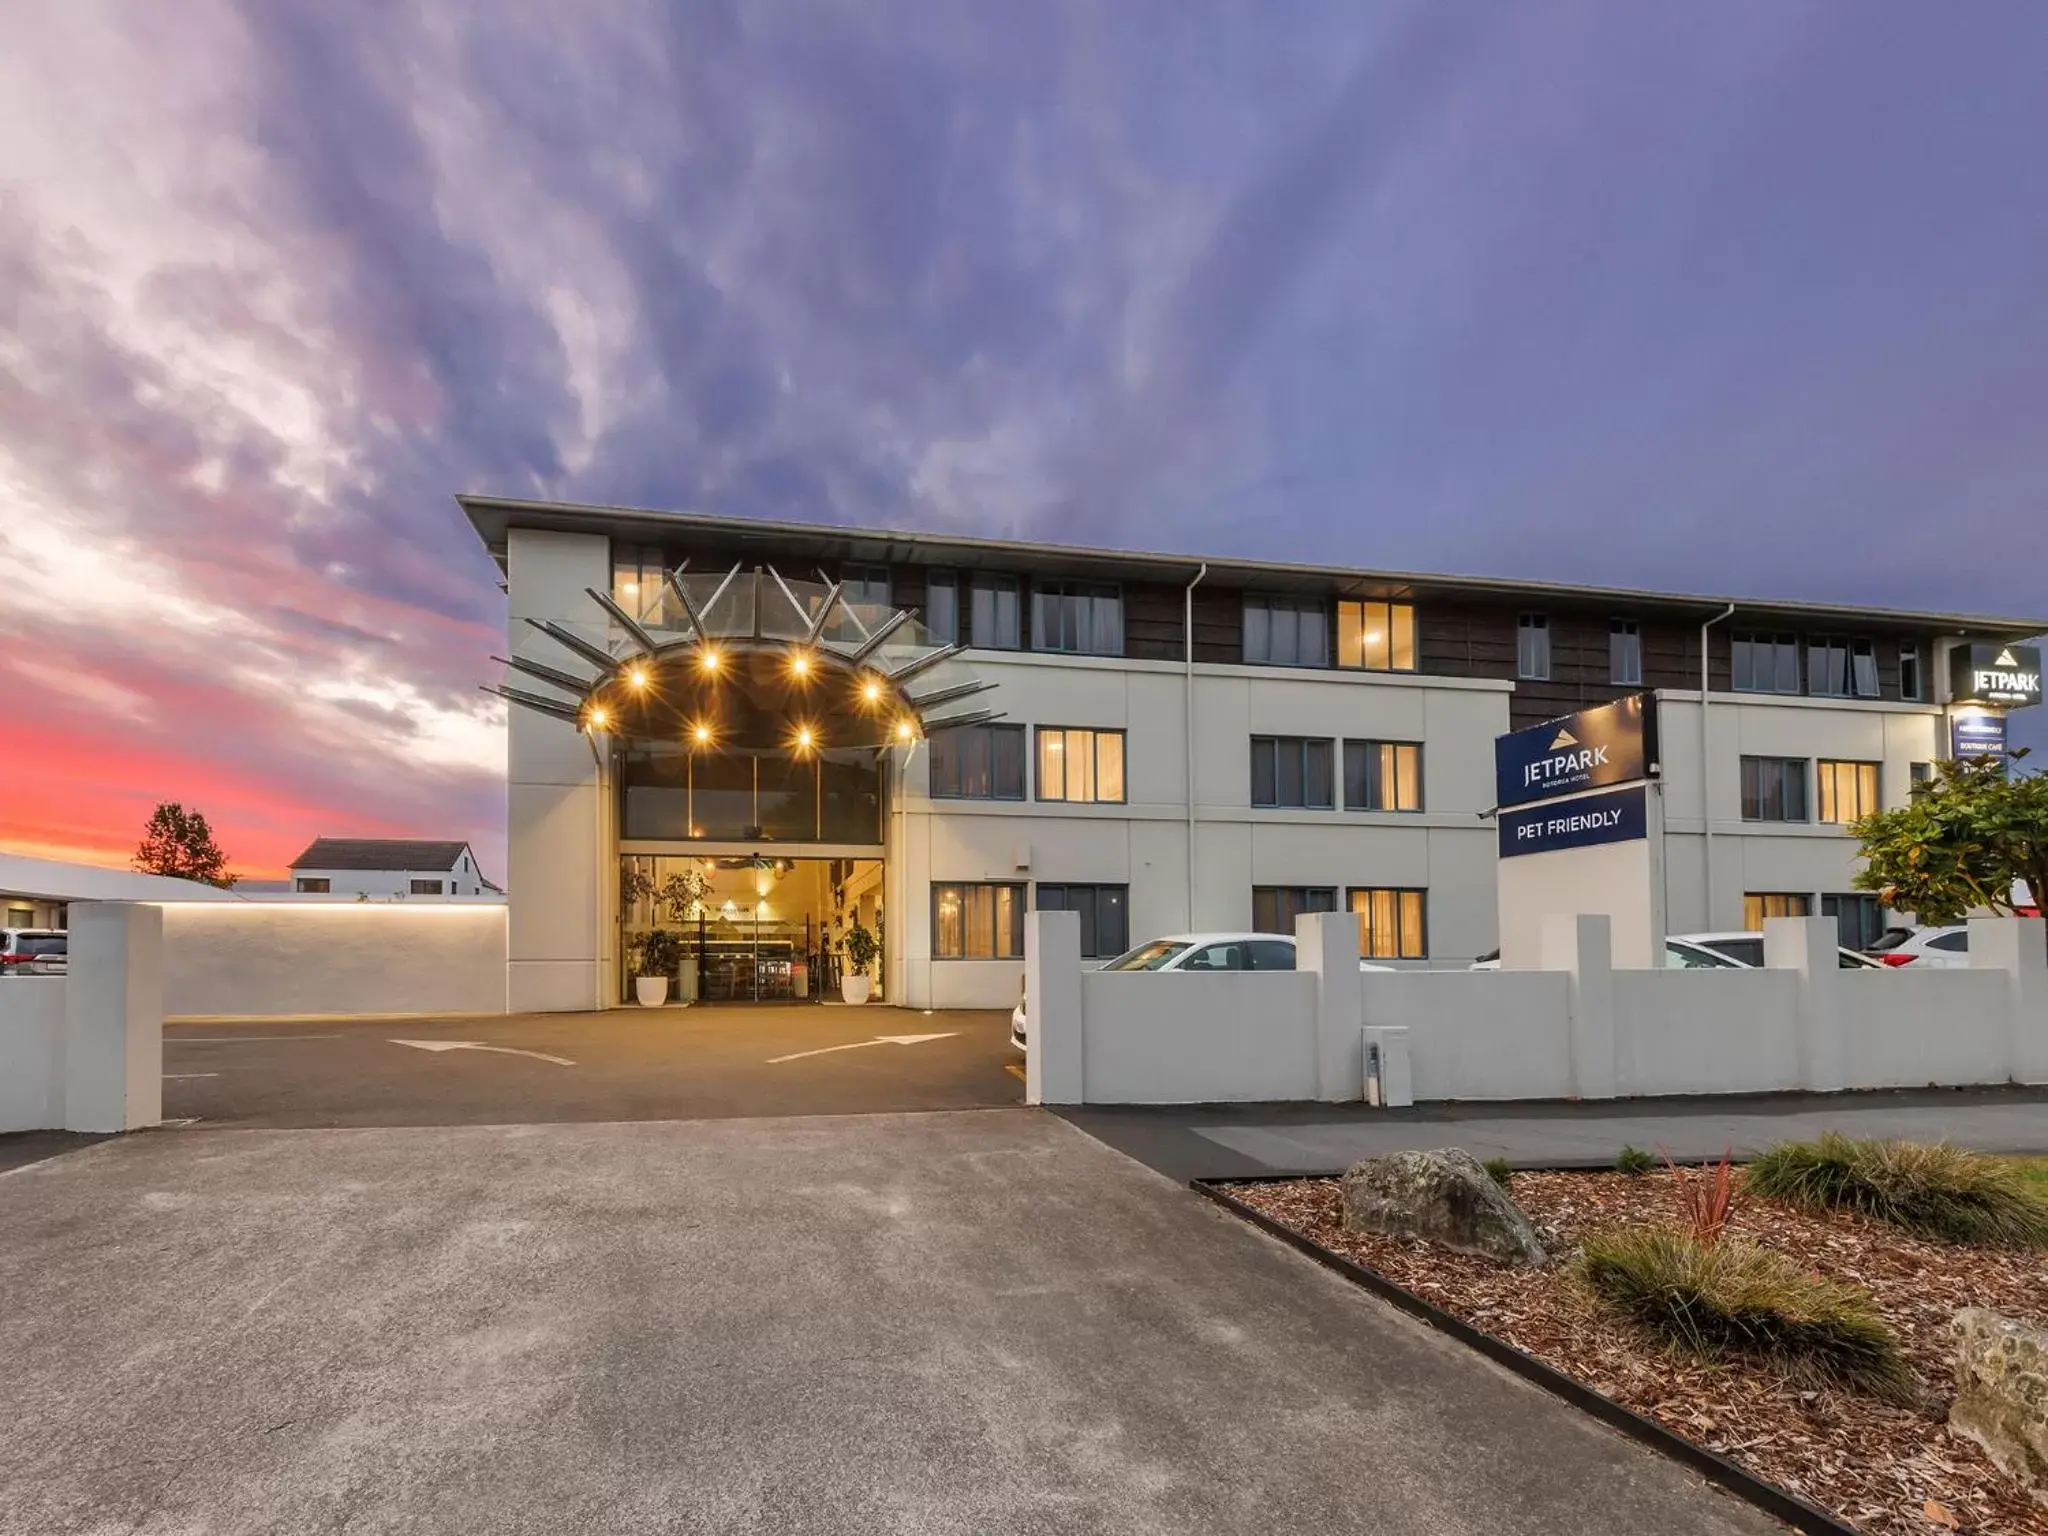 Property Building in JetPark Hotel Rotorua